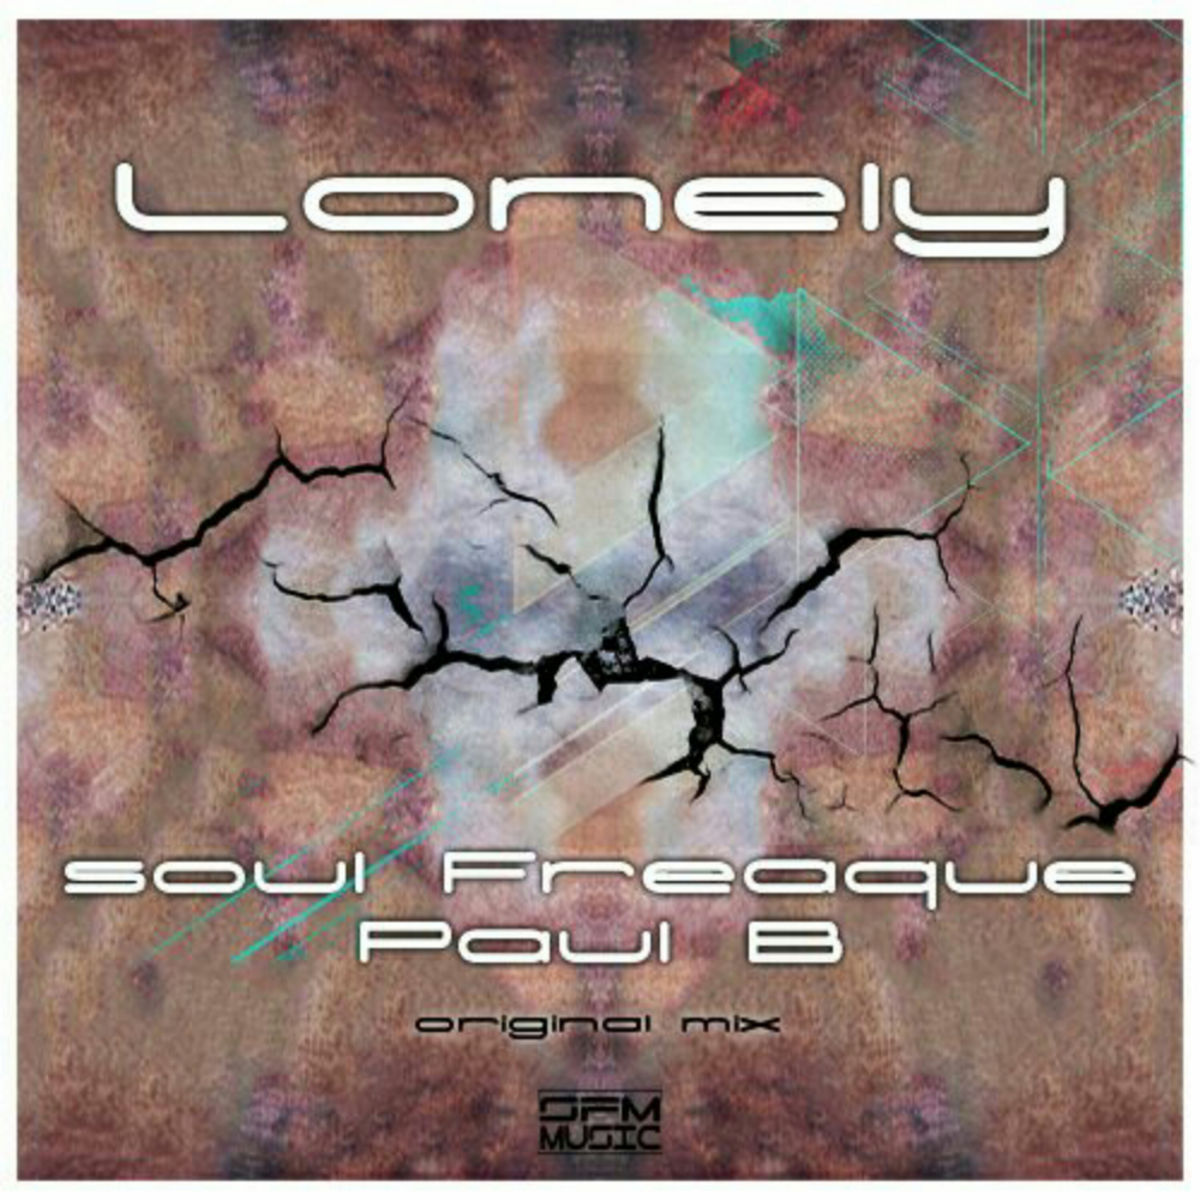 Soul Freaque & Paul B - Lonely / Gentle Soul Records